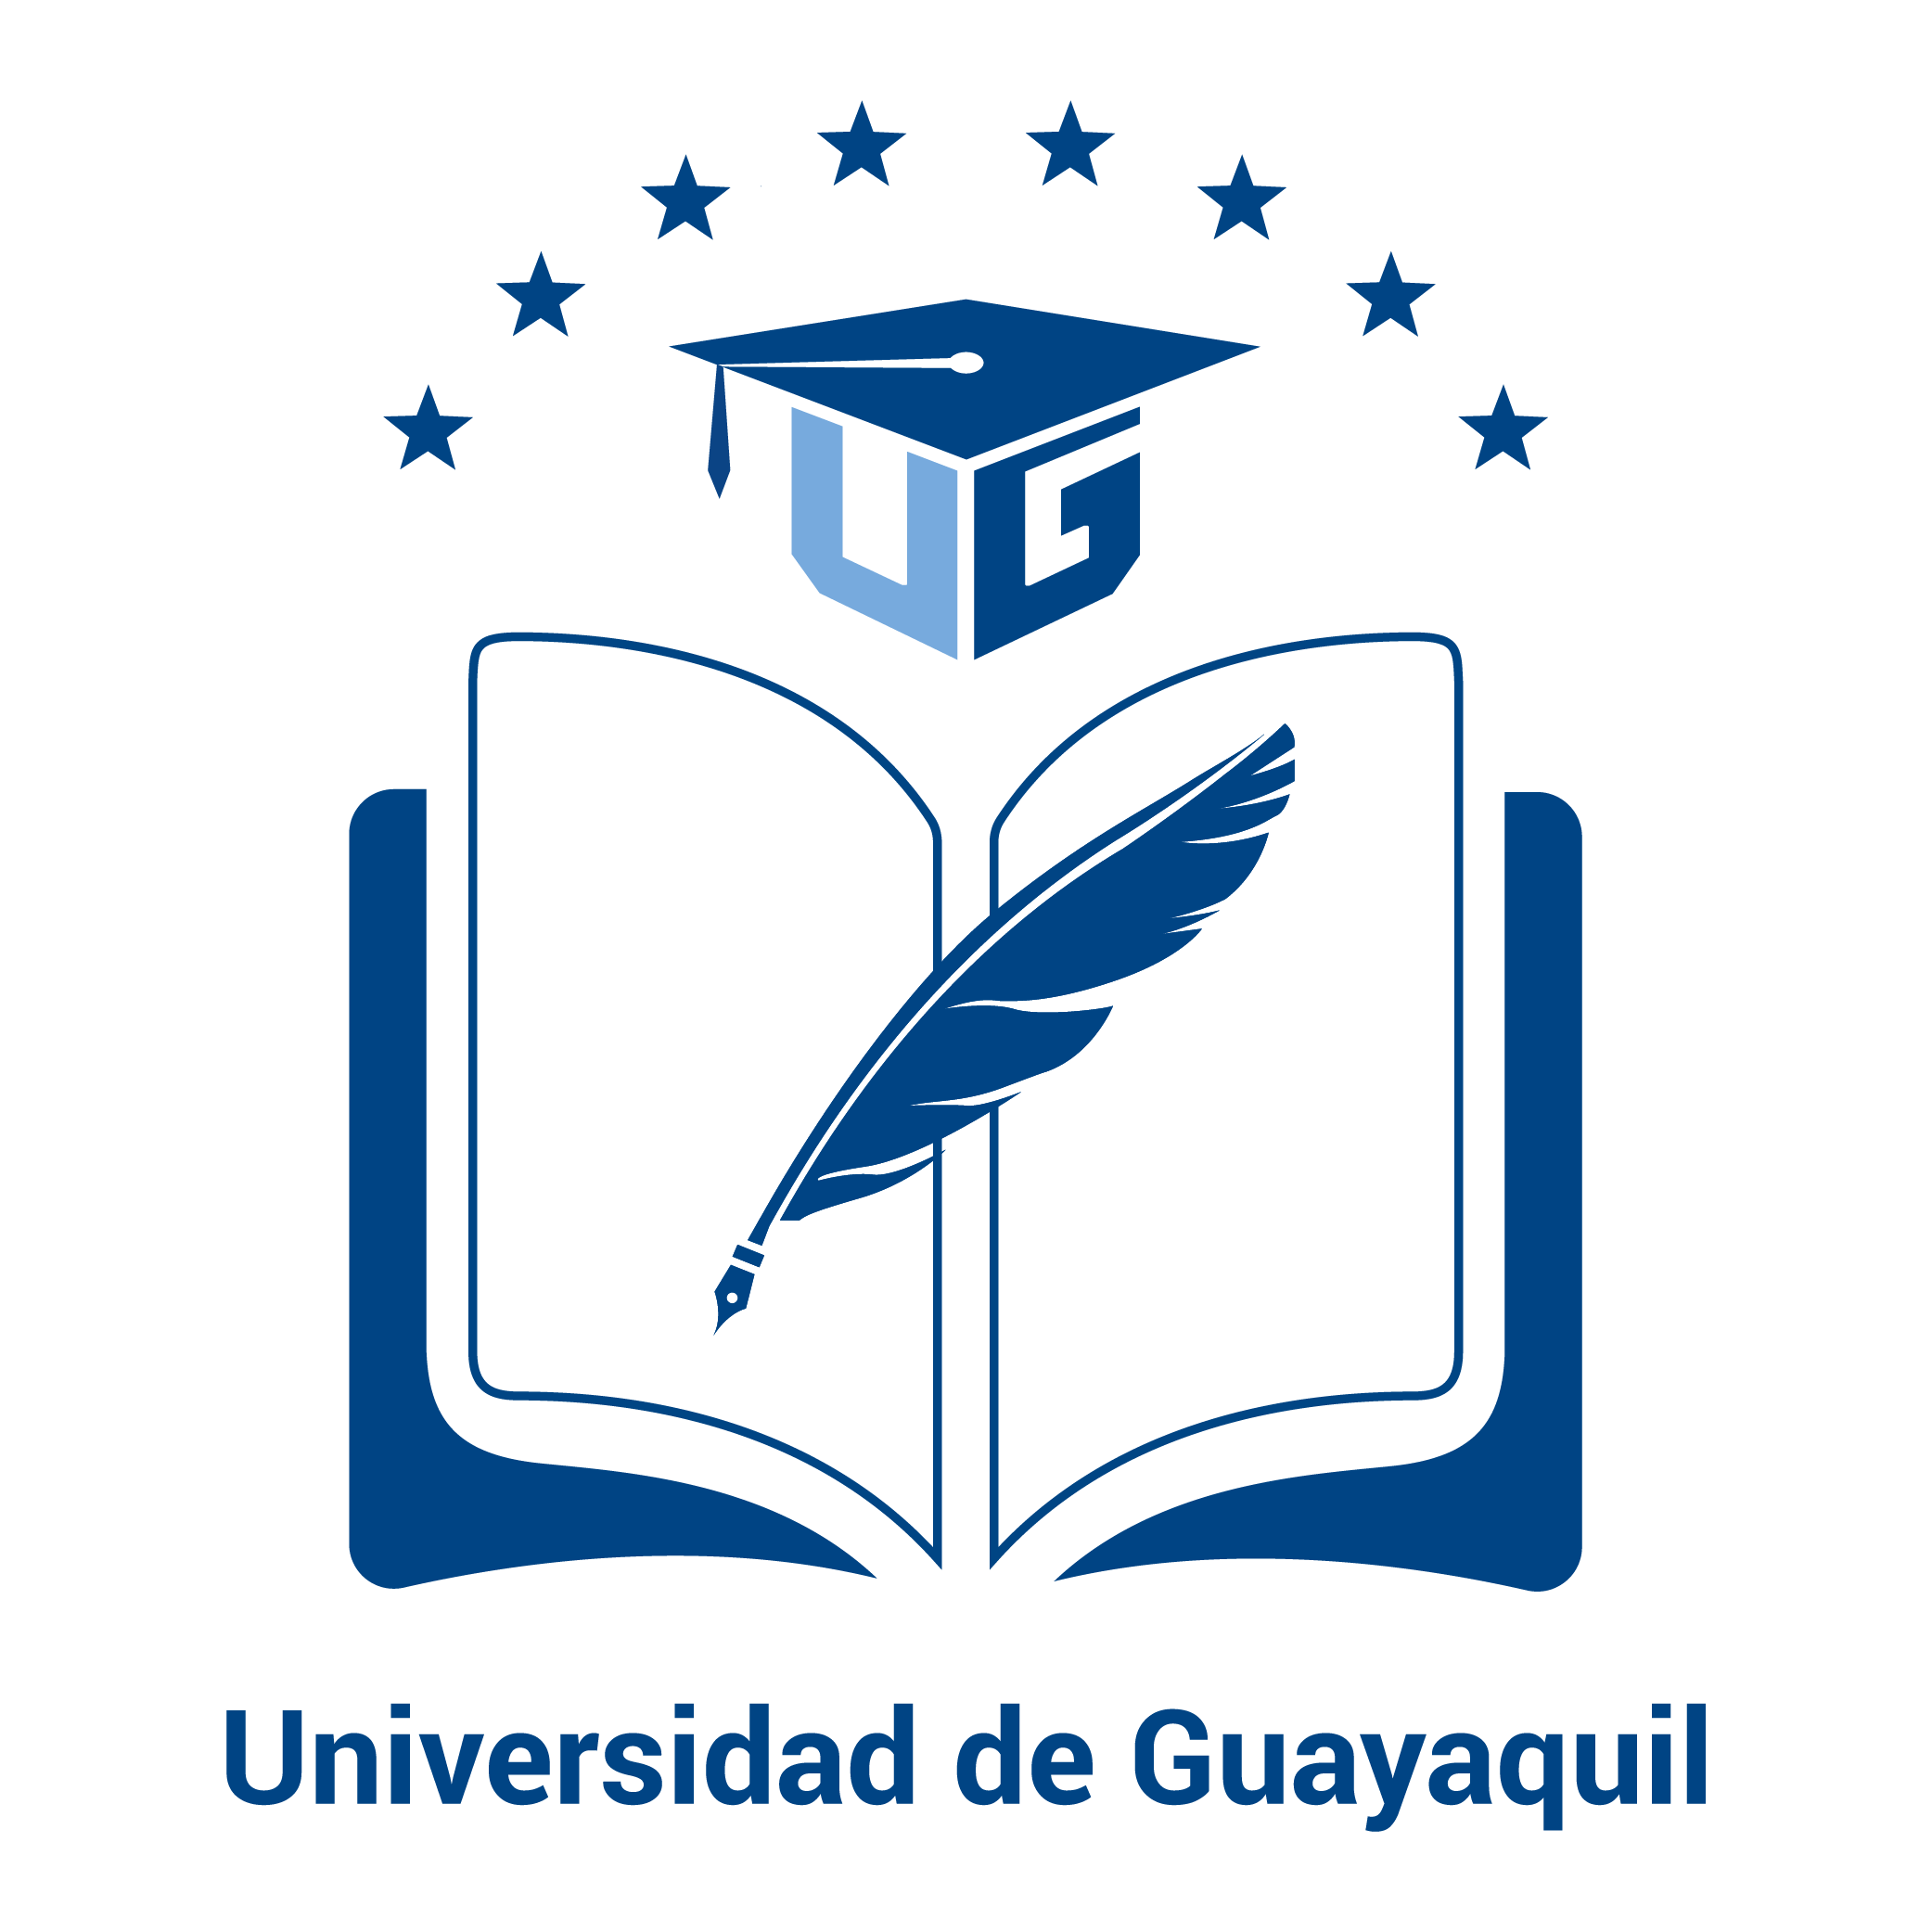 Revista Universidad de Guayaquil